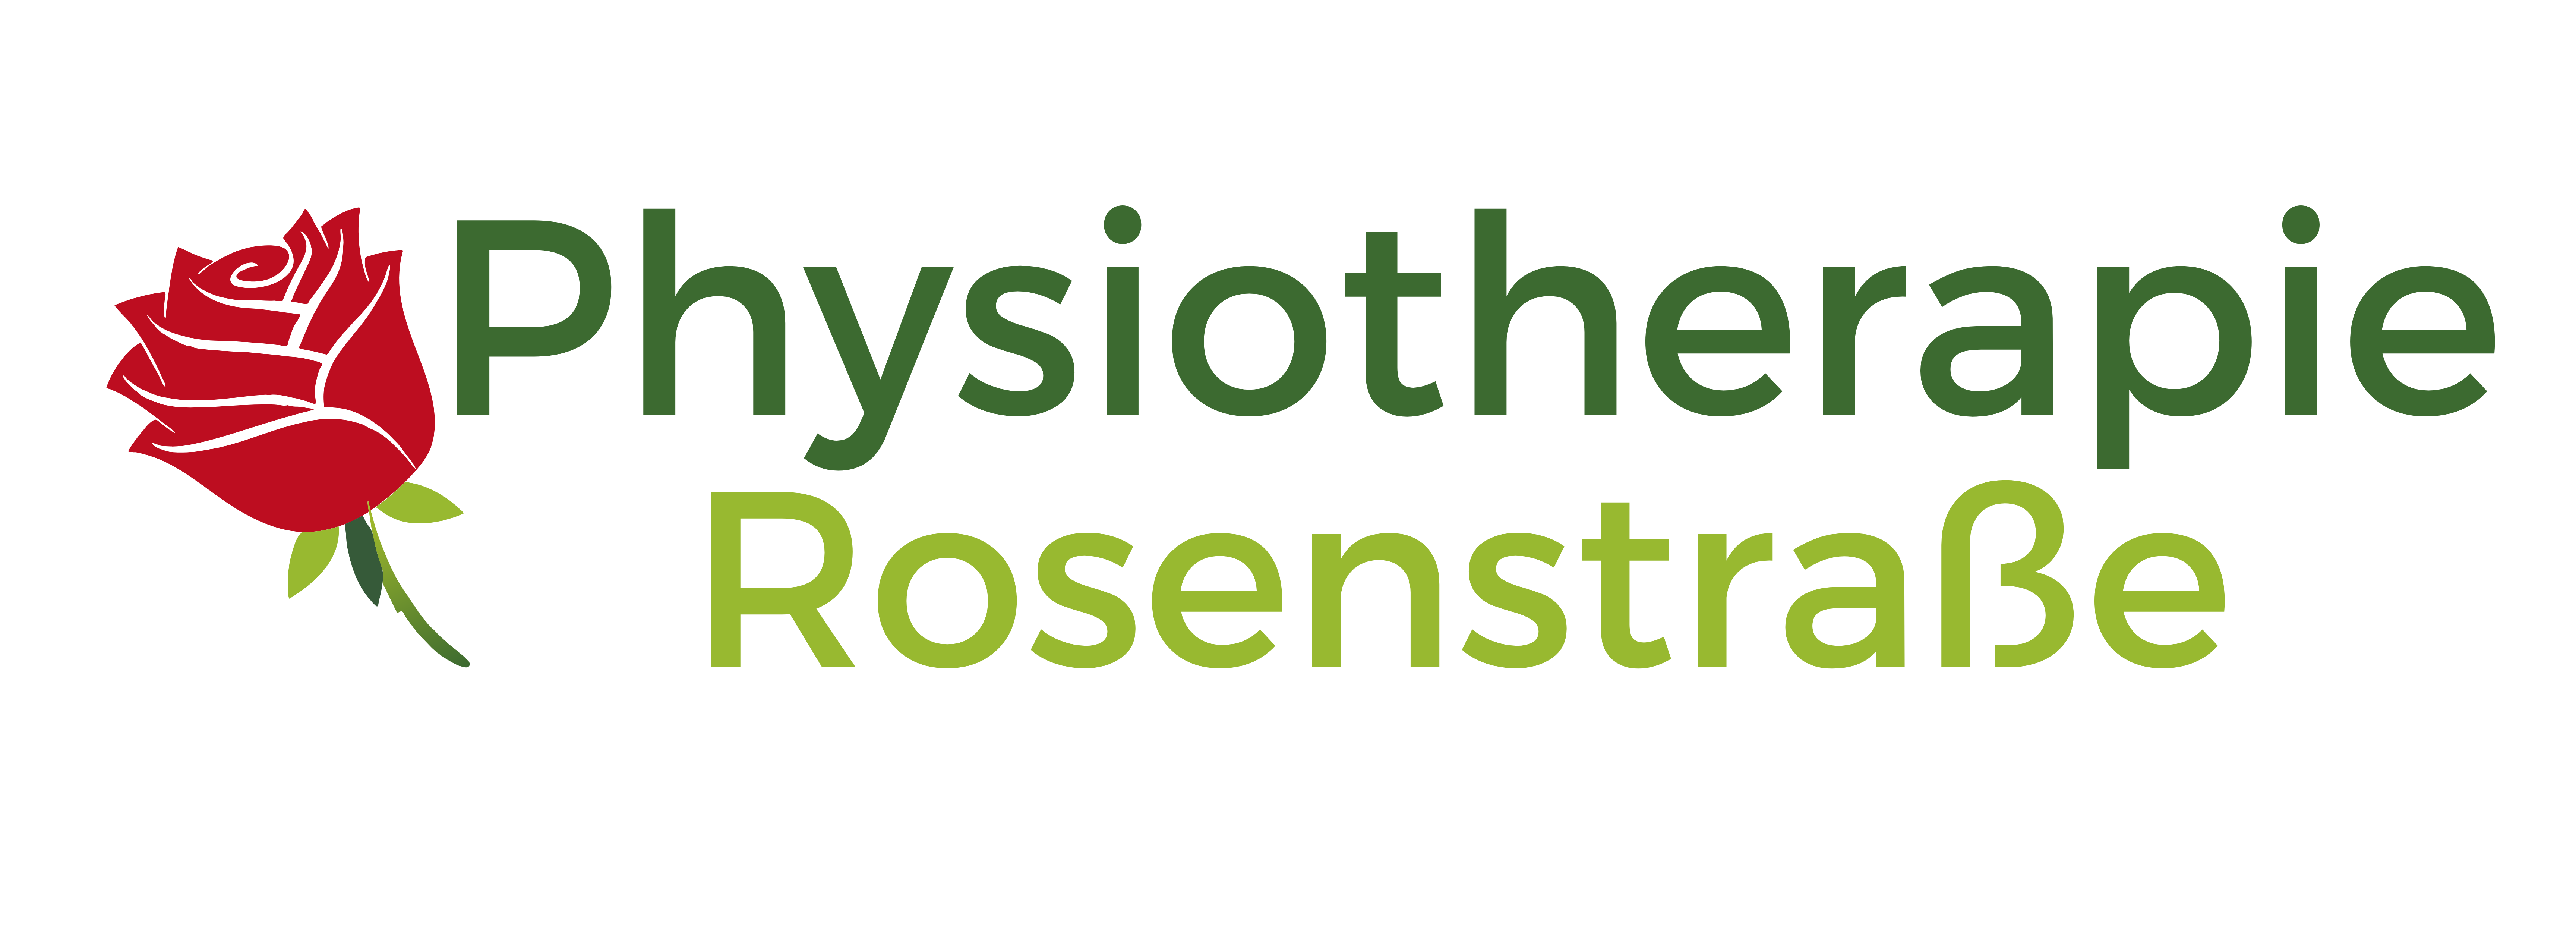 Physiotherapie Rosenstraße